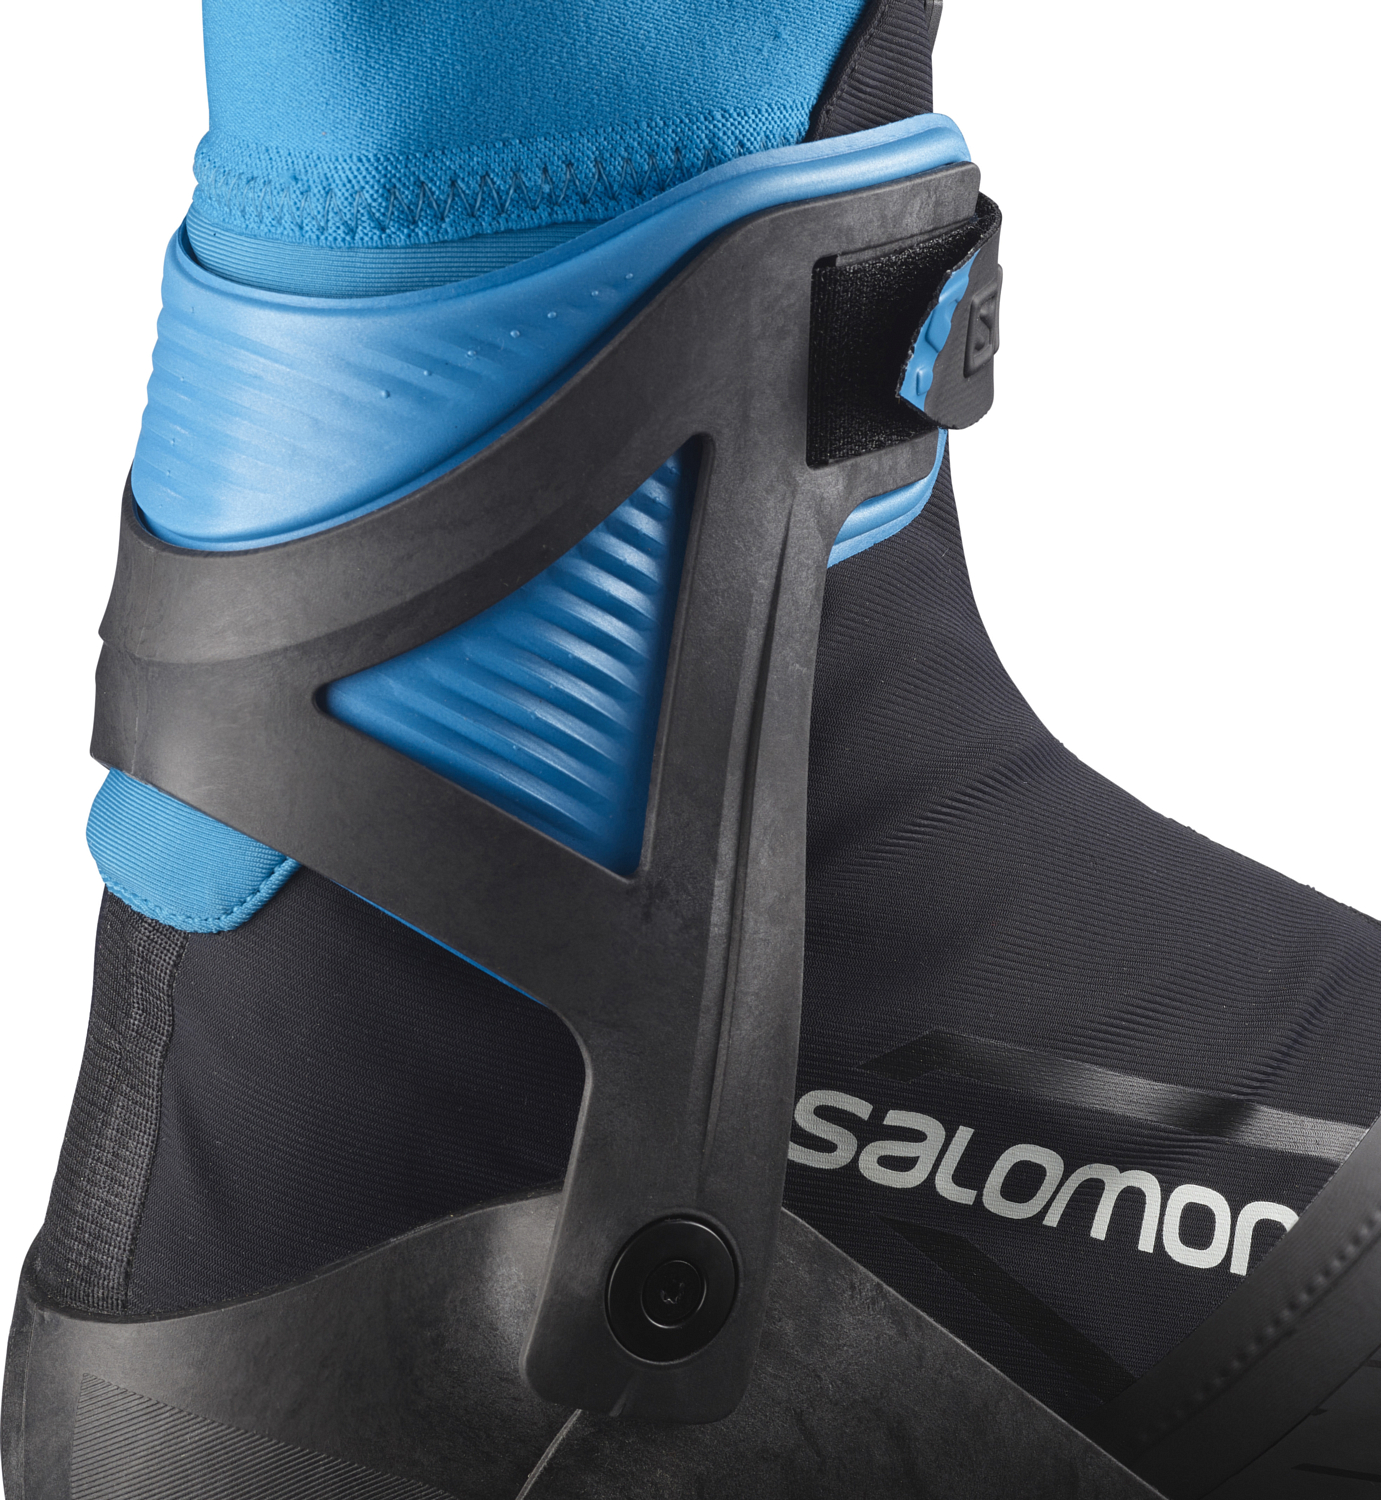 Лыжные ботинки SALOMON 2021-22 S/Max Carbon Skate Prolink